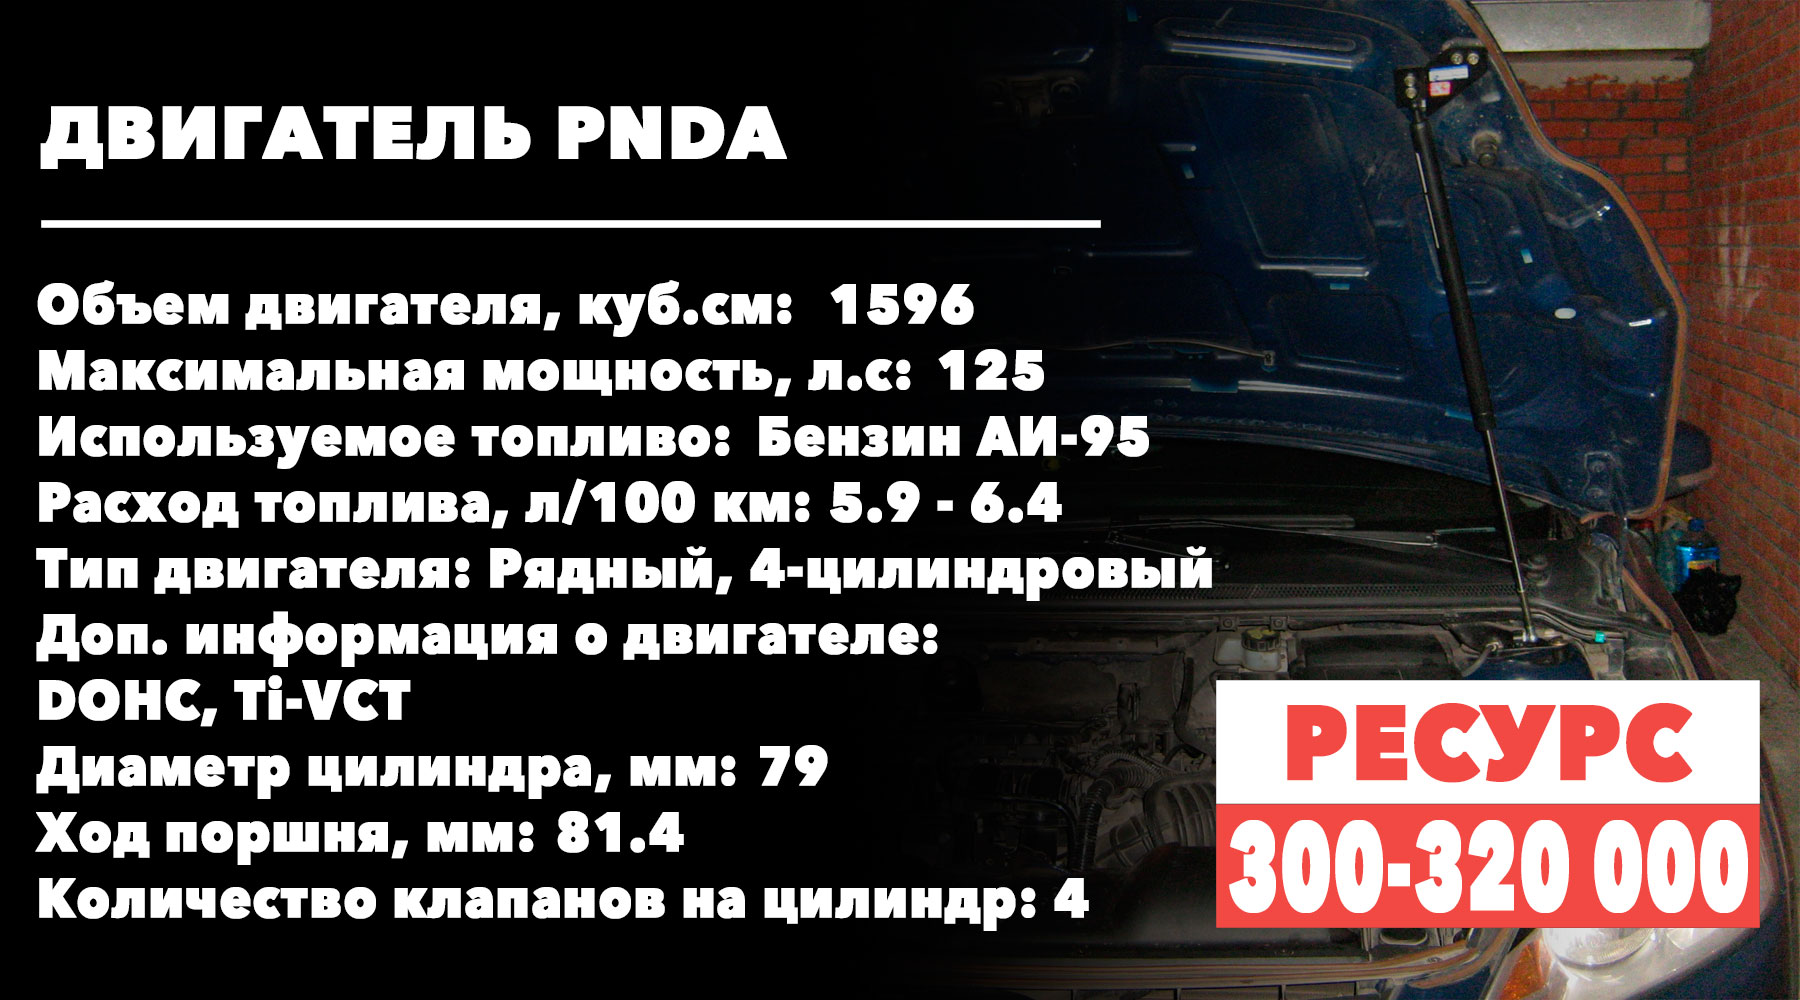 Срок-службы 1.6-литровых-моторов Ford Focus (PNDA)